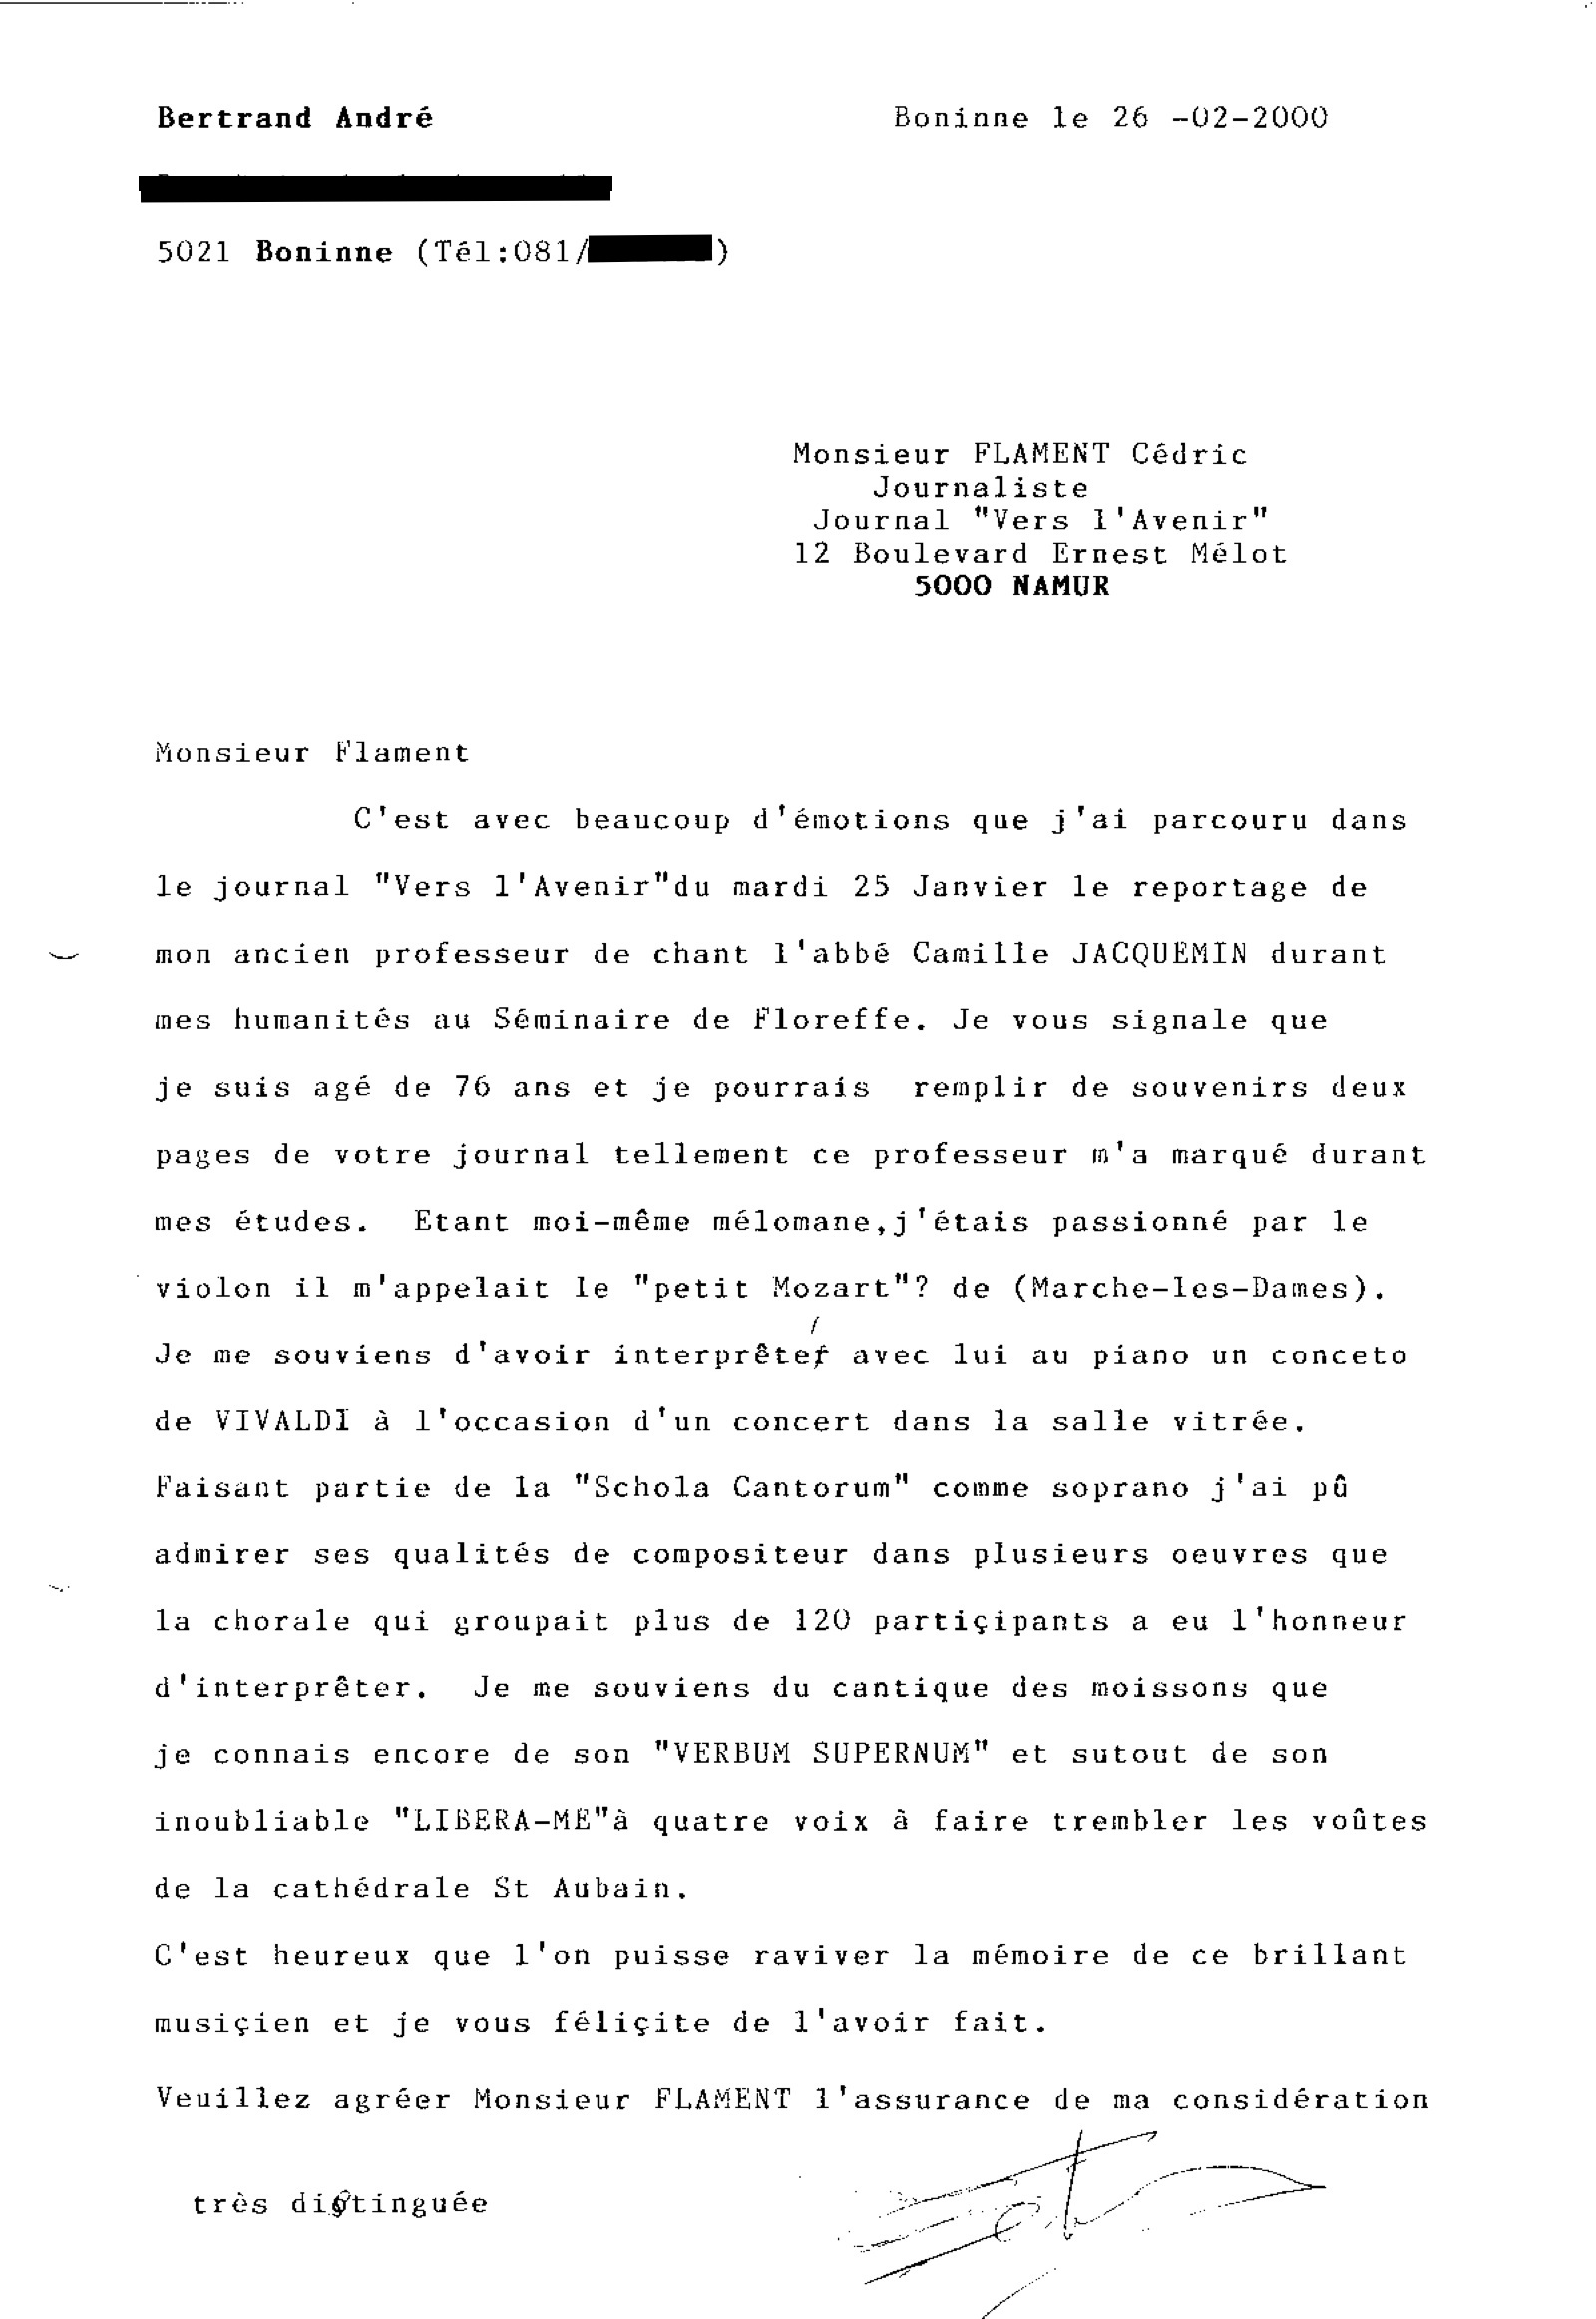 Remerciements adressés par André Bertrand à cédric Flament, l'auteur de l'article de presse du 22/01/2000 aau sujet du centenaire de la naissance de camille Jacquemin.